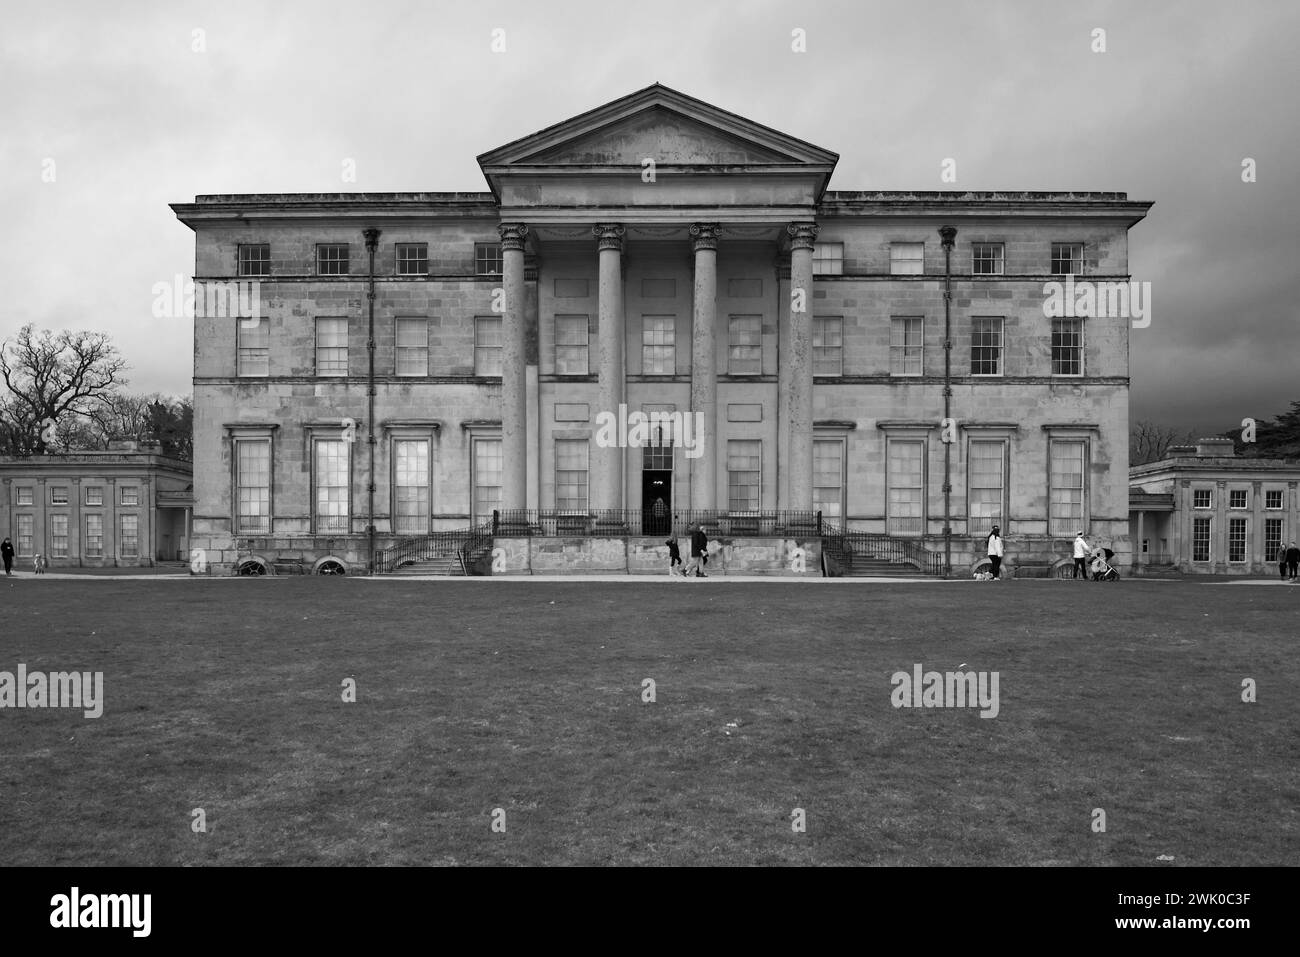 Immagini della residenza signorile di Attingham Park vicino a Shrewsbury Shropshire, edificio classificato Grade i e parco Foto Stock